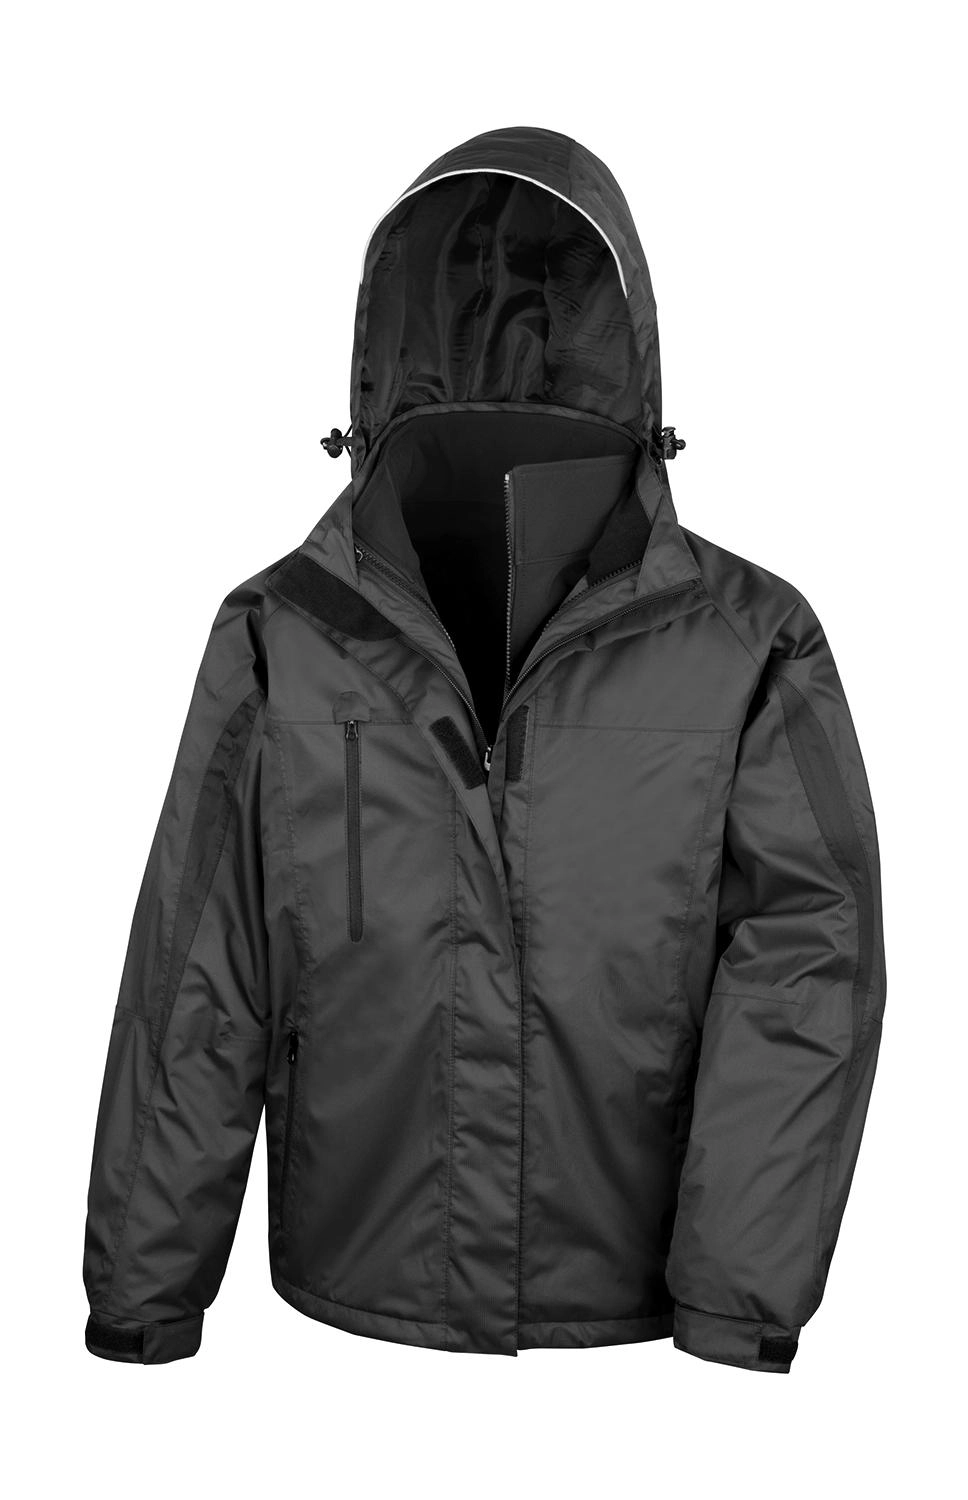 3-in-1 Journey Jacket zum Besticken und Bedrucken in der Farbe Black/Black mit Ihren Logo, Schriftzug oder Motiv.